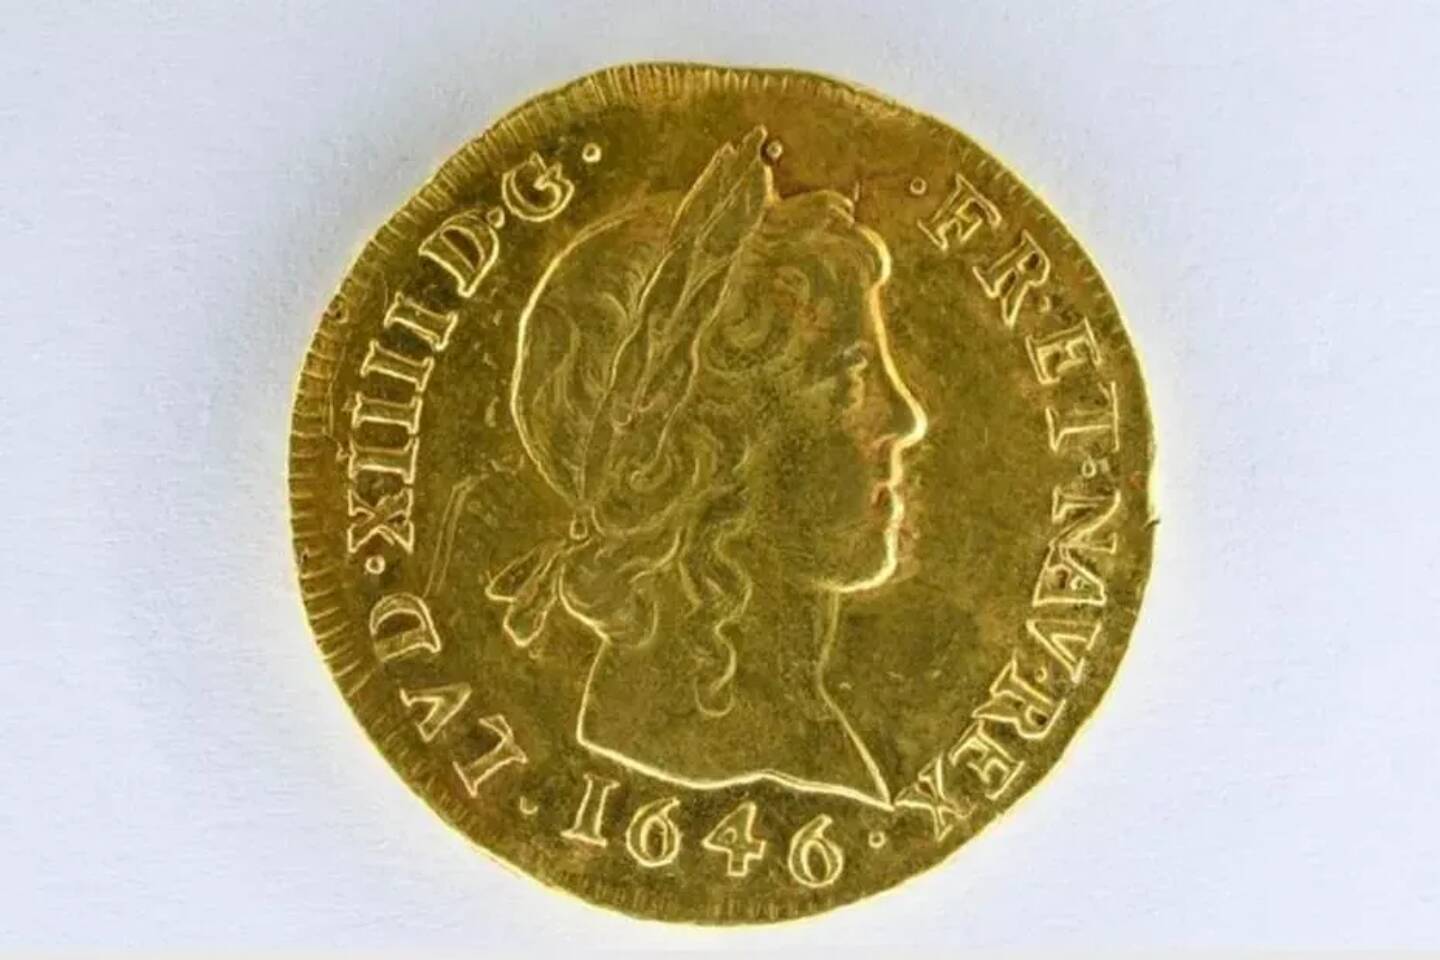 Mis à prix à 15 000 euros, ce Louis d'or très rare, figurant Louis XIV enfant, les cheveux tombant sur le cou, a été adjugé pour 46.000 € par le commissaire-priseur Deloys à Angers le 29 septembre 2021.